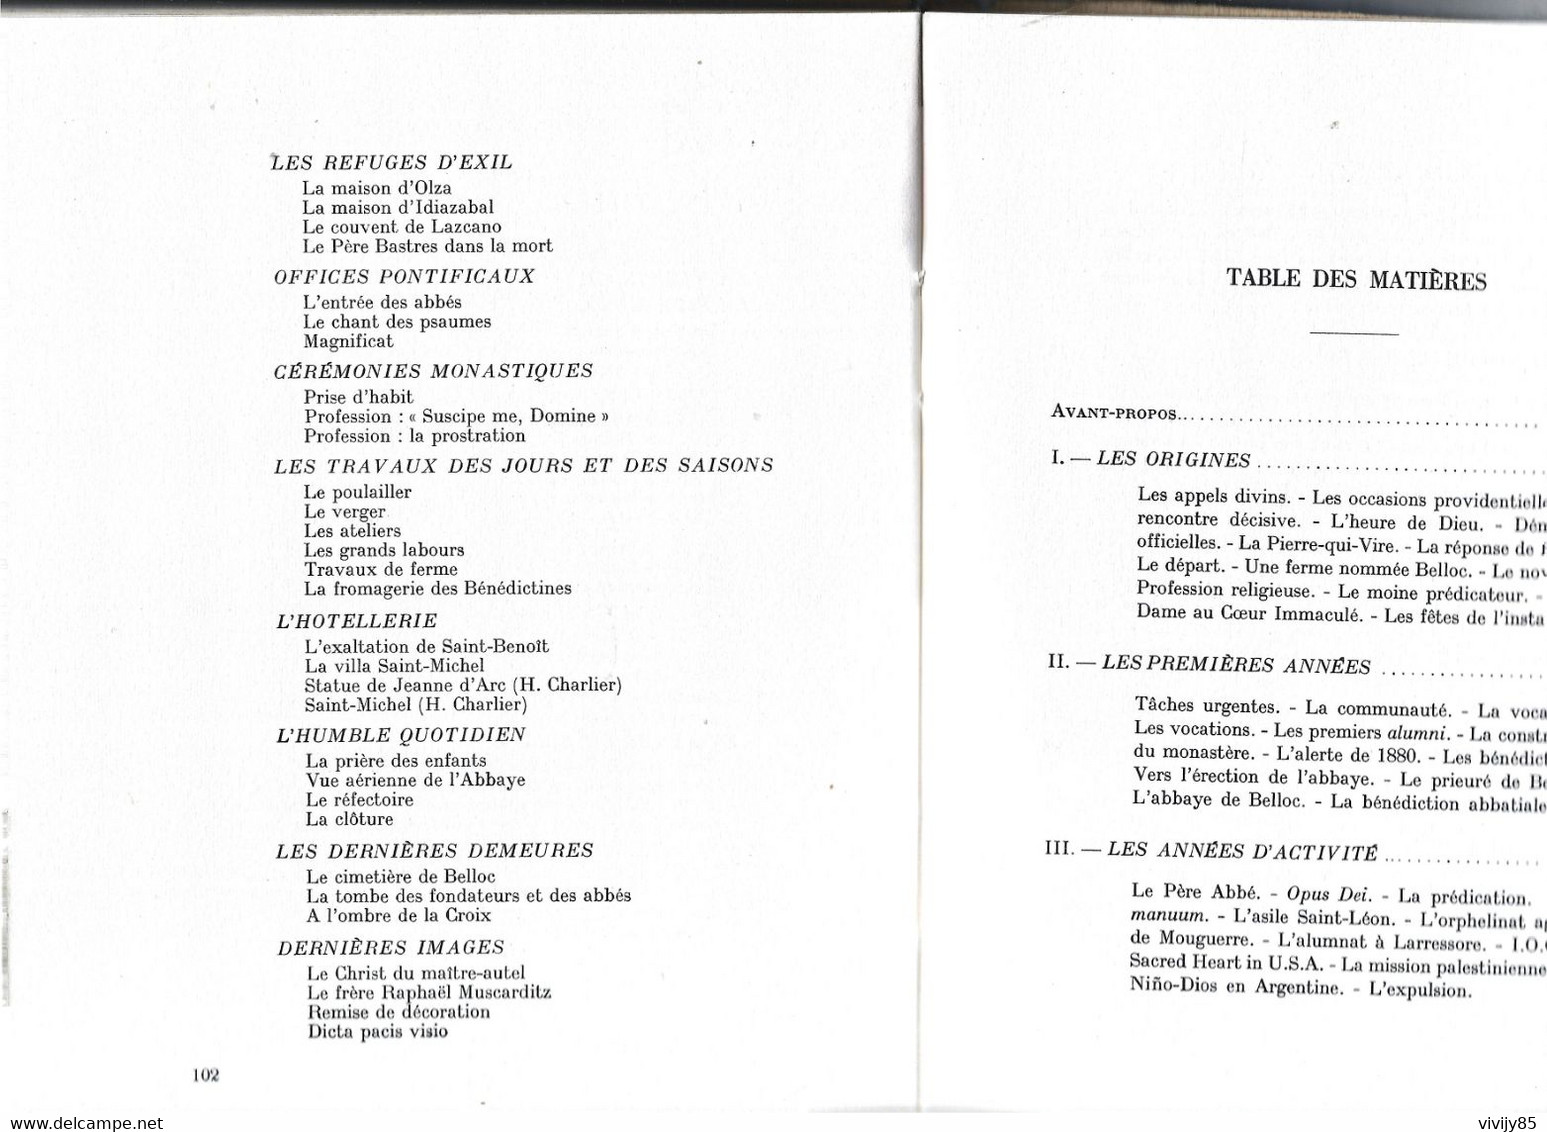 64 - Livre ancien peu courant " L'Abbaye de BELLOC 1875-1955 " de Dom Ildefonse Darricau - 1957 - 104 pages